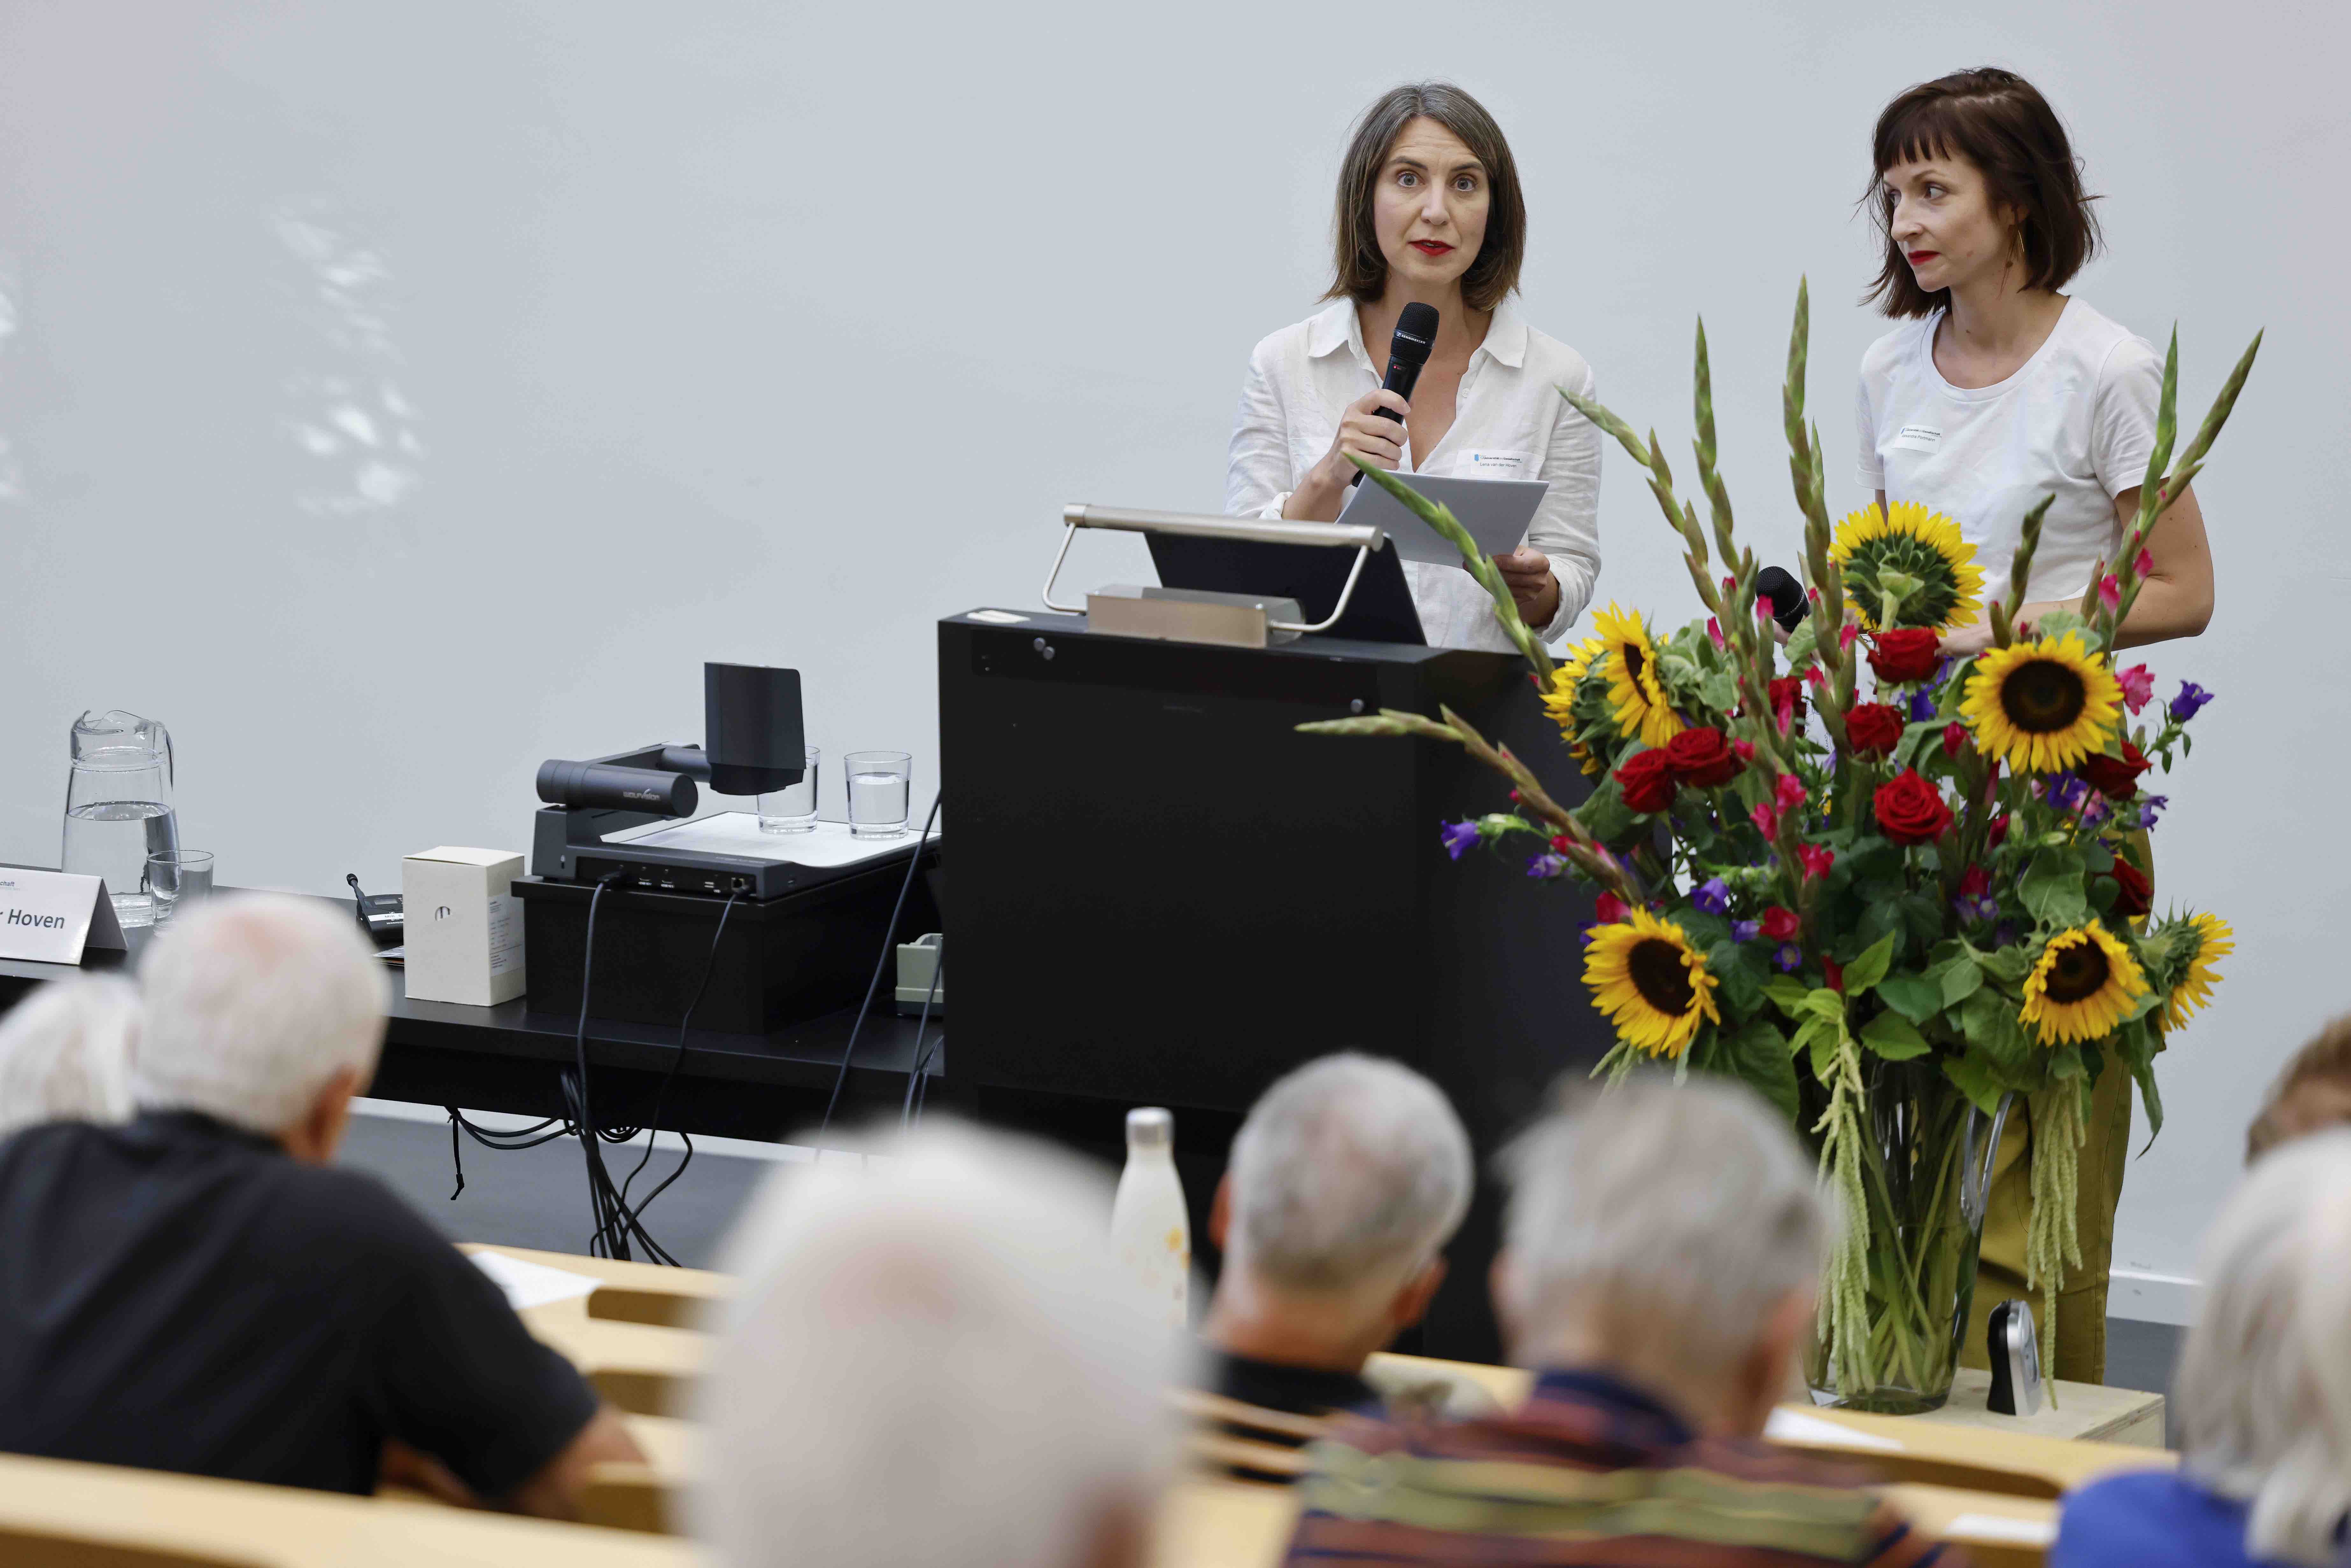 Die beiden Referentinnen Alexandra Portmann und Lena van der Hosen stehen hinter einem Rednerpult. Im Vordergrund sind Zuhörer:innen sichtbar, neben dem Rednerpult steht ein Blumenstrauss.